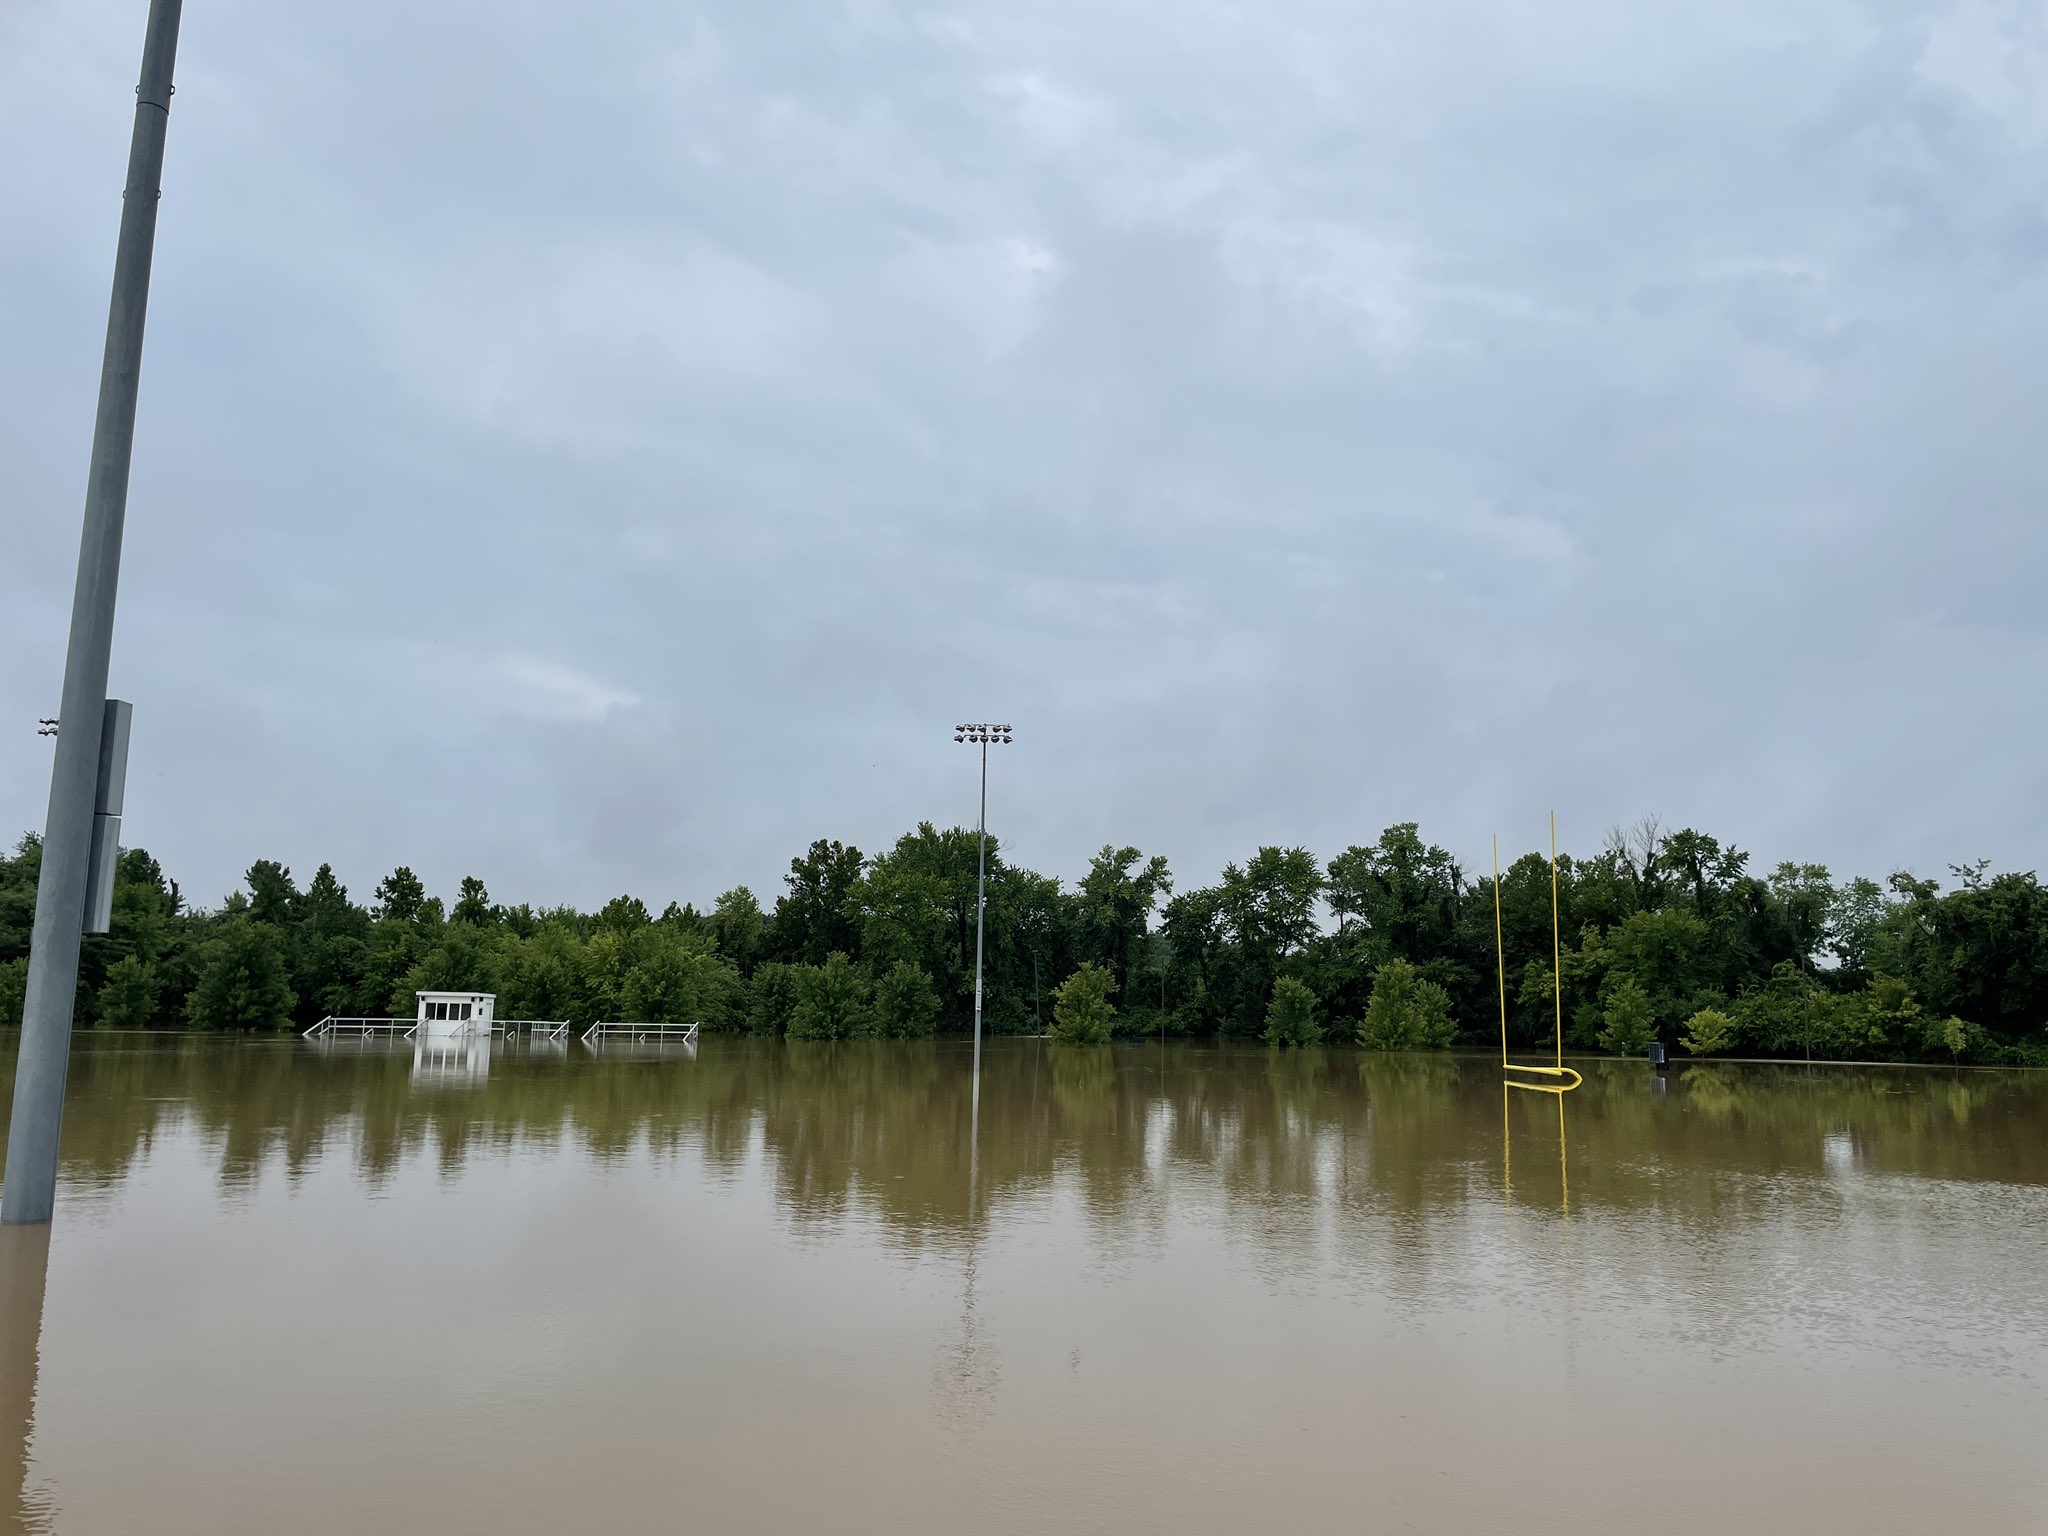 Flooding at Dames Park in O'Fallon, MO